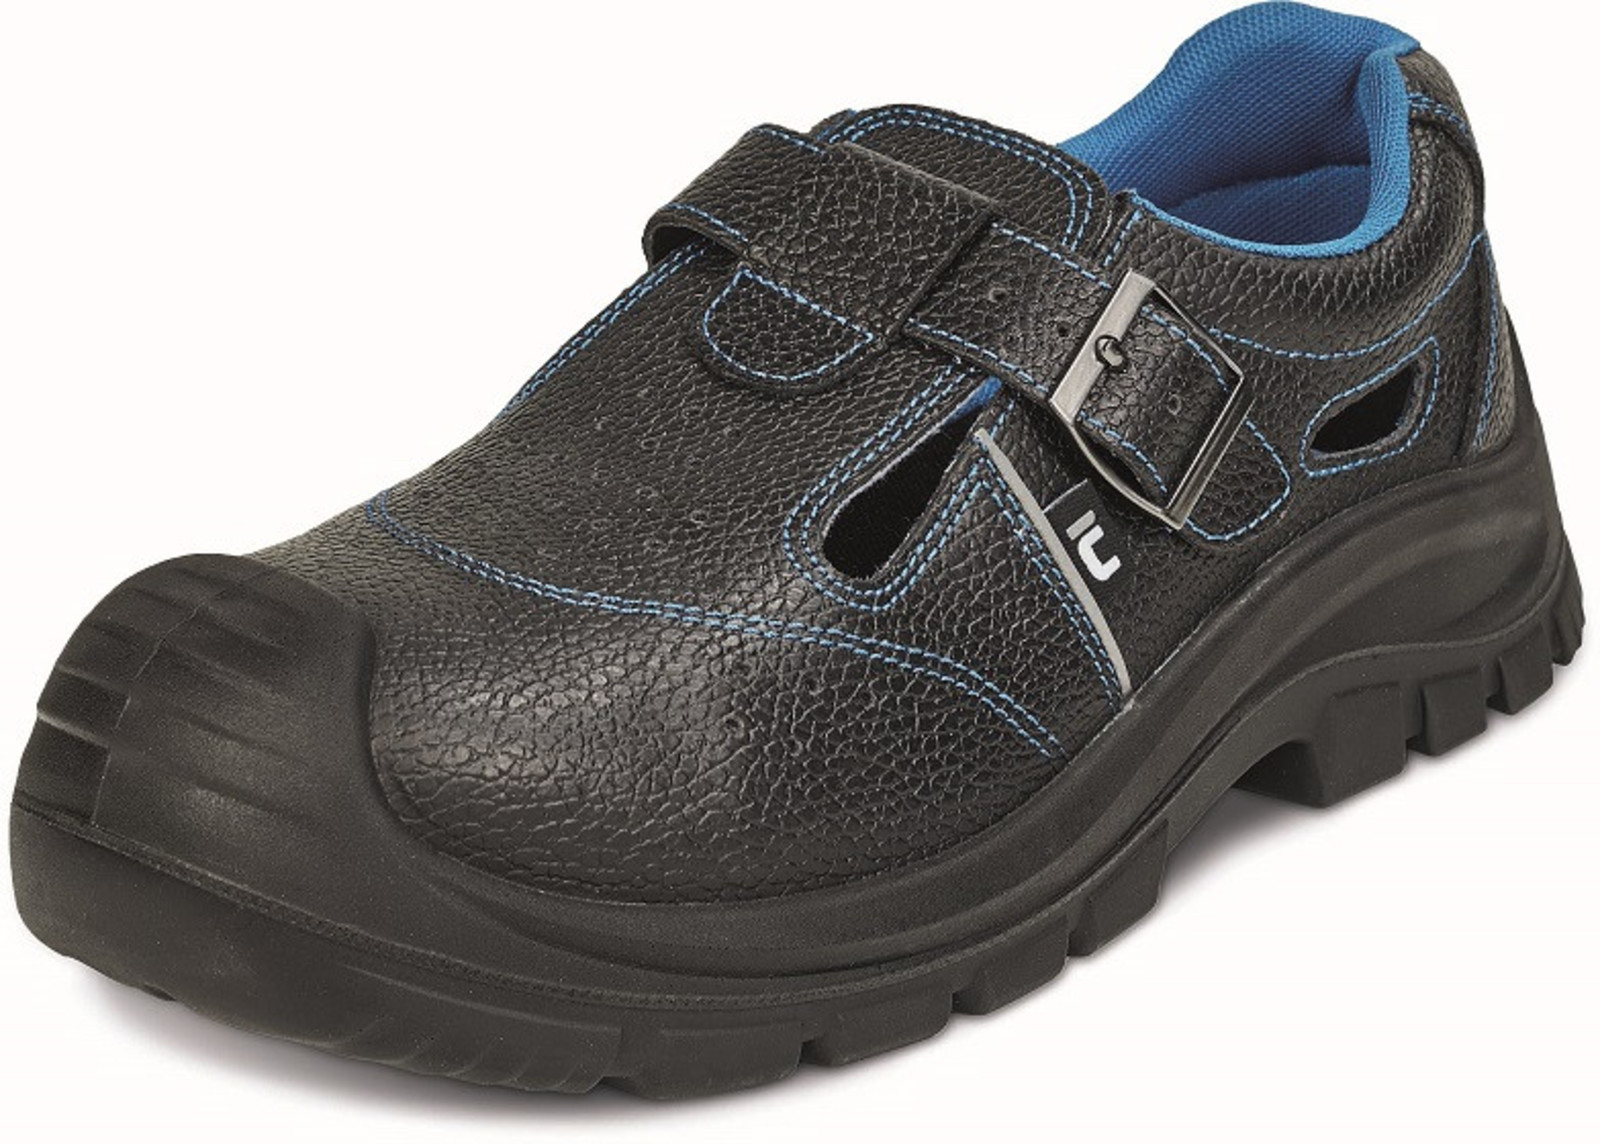 Bezpečnostné sandále Raven XT S1 SRC - veľkosť: 48, farba: čierna